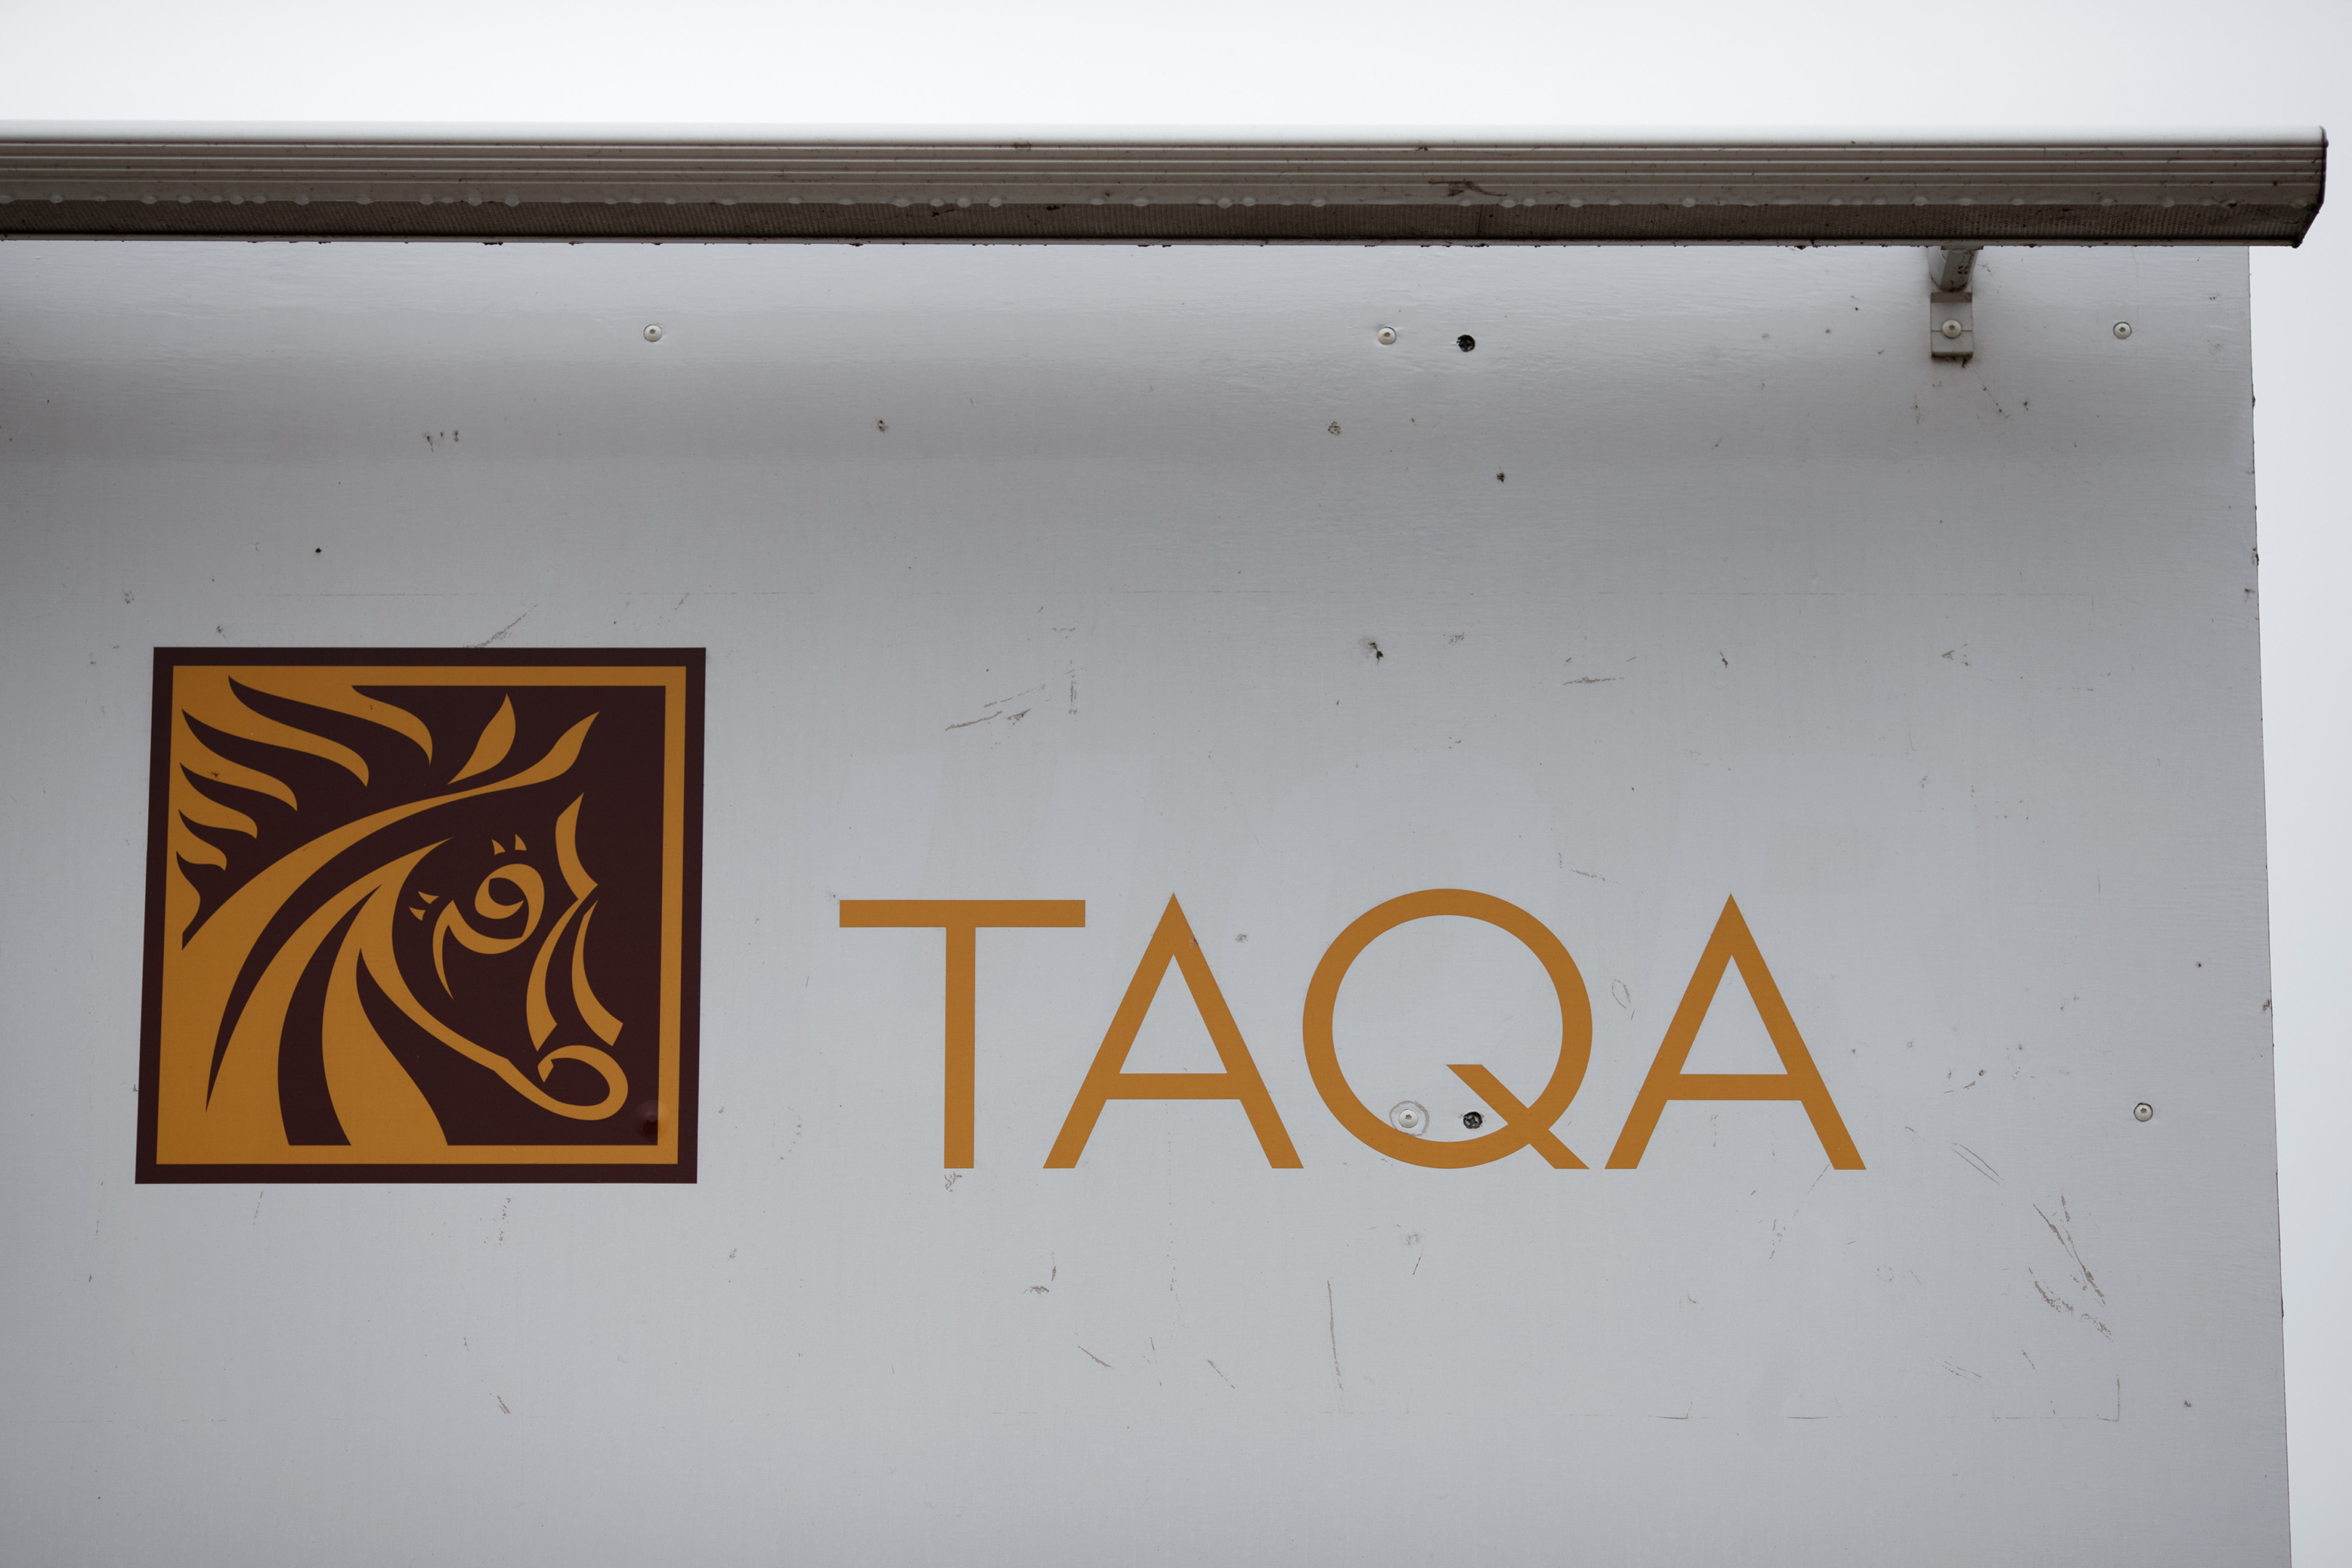 Taqa logo